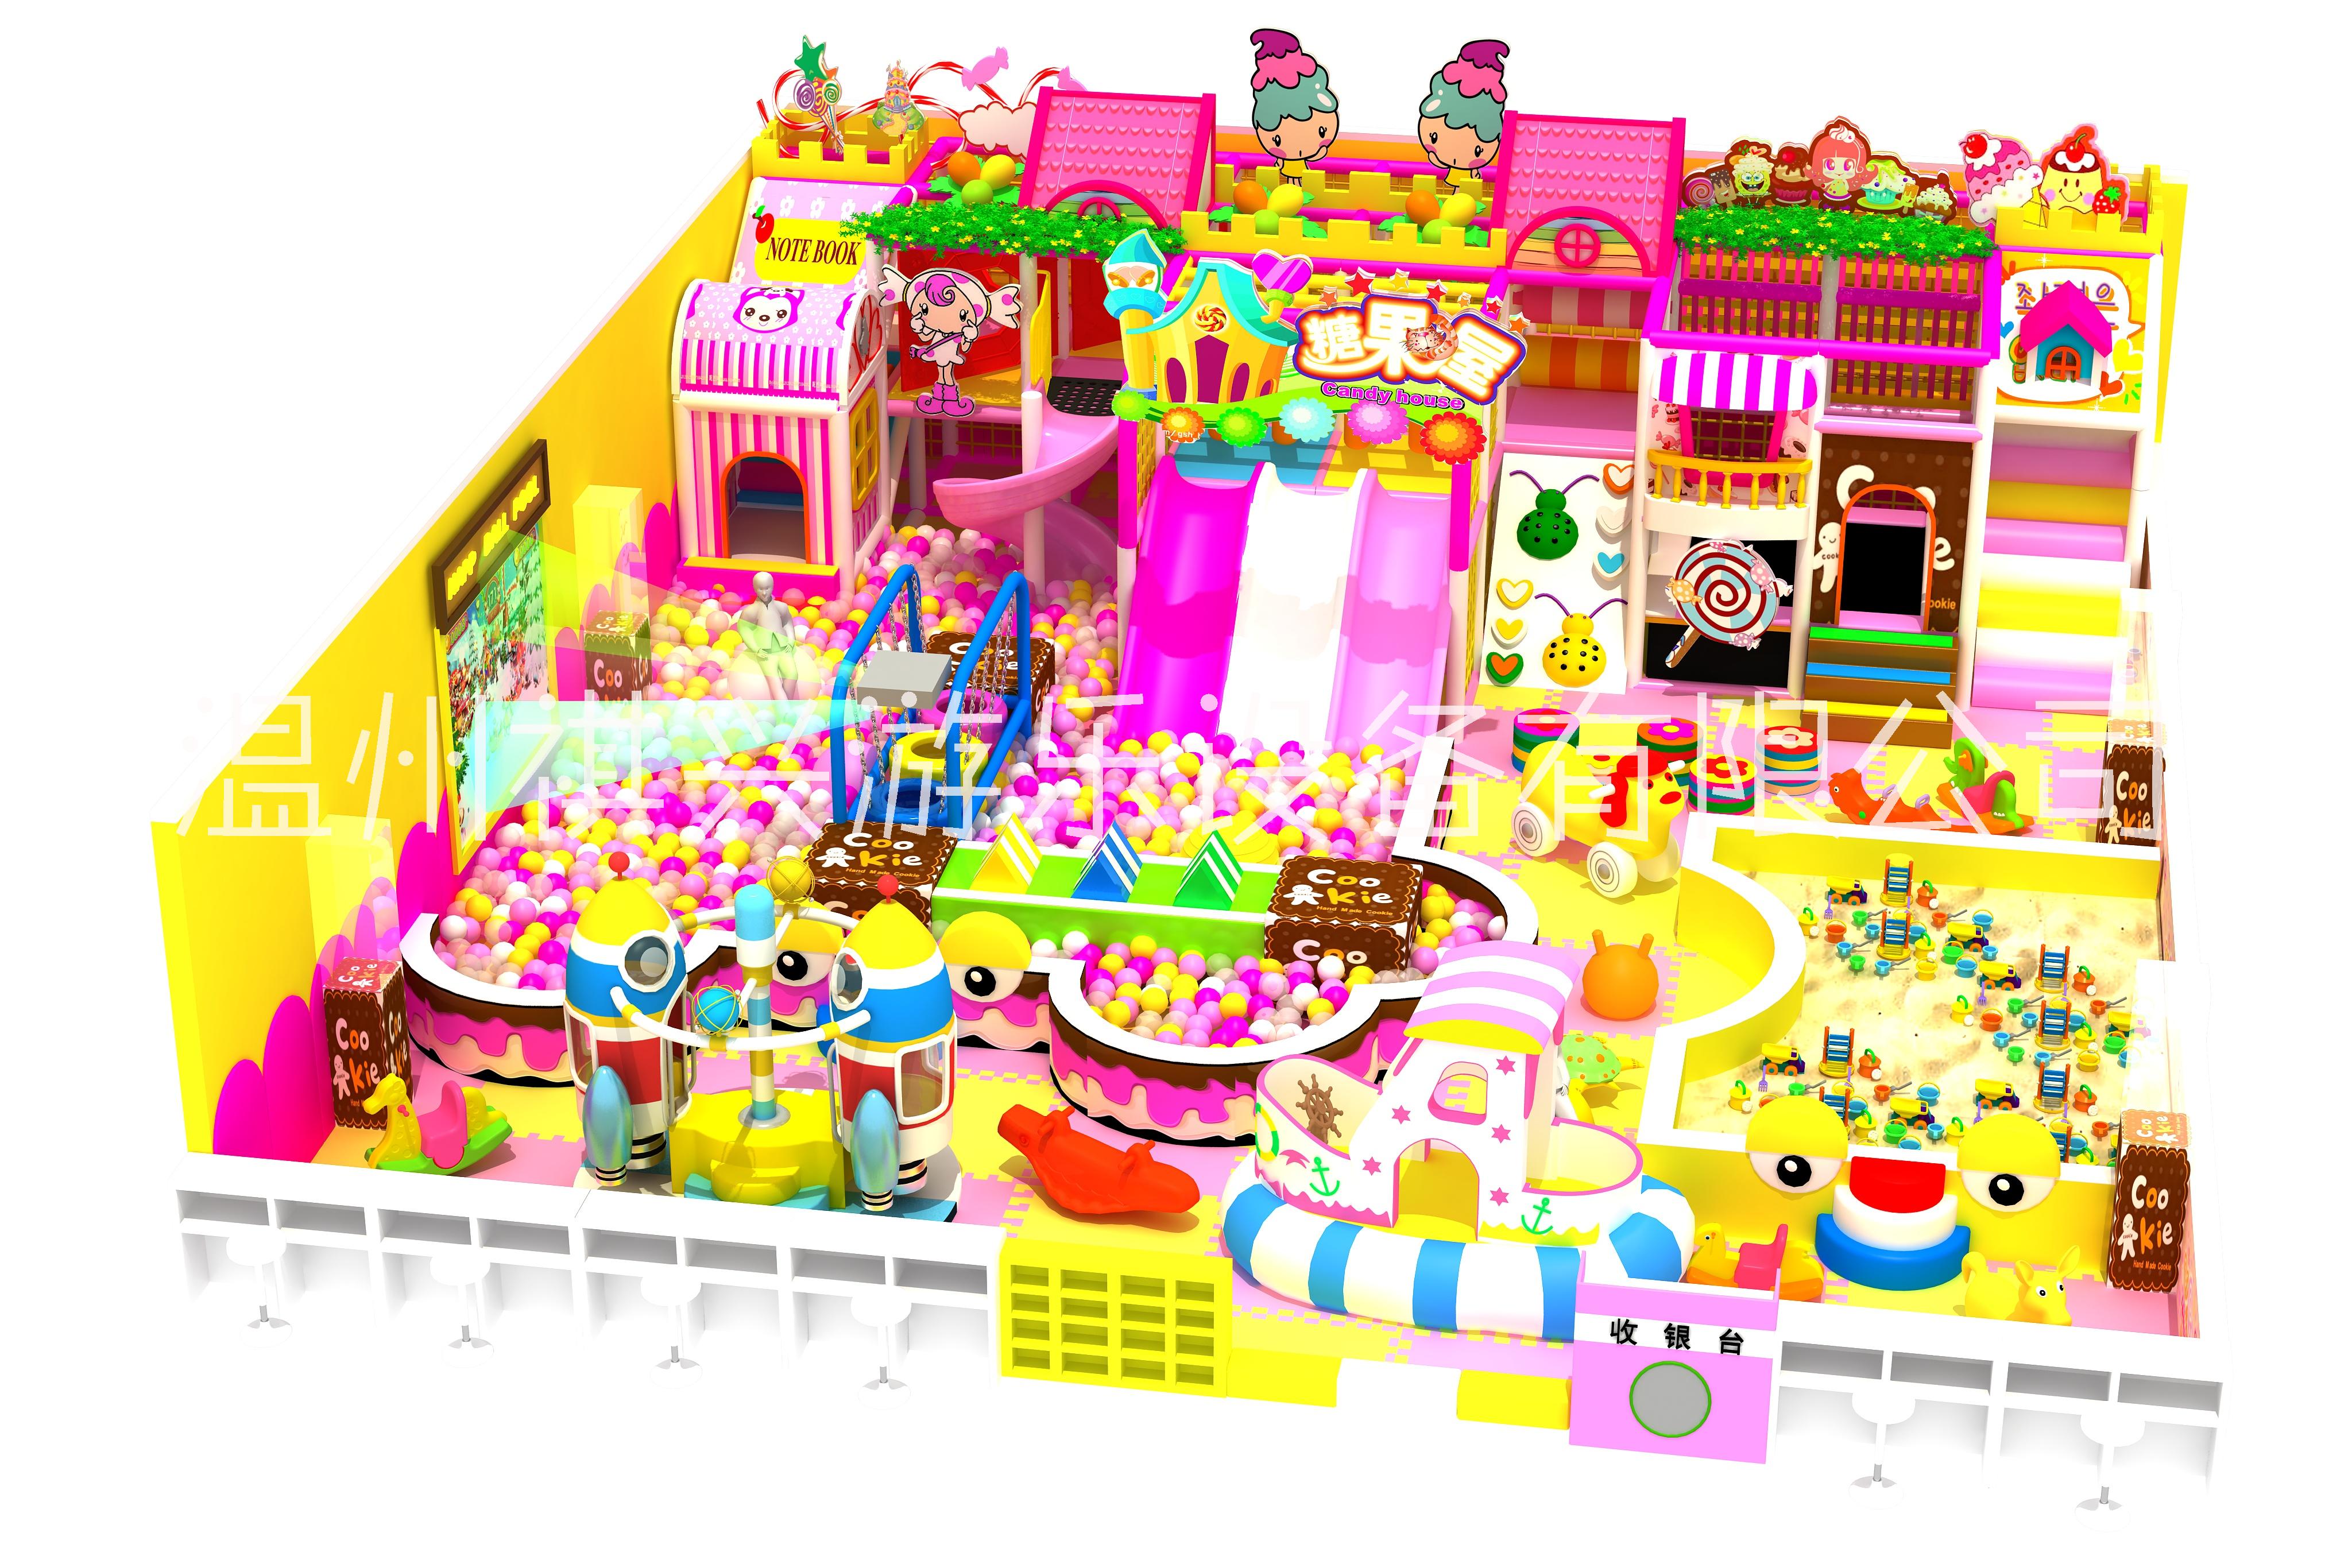 淘气堡儿童乐园 室内小型游乐场 糖果主题大型商场滑梯 蹦床乐园